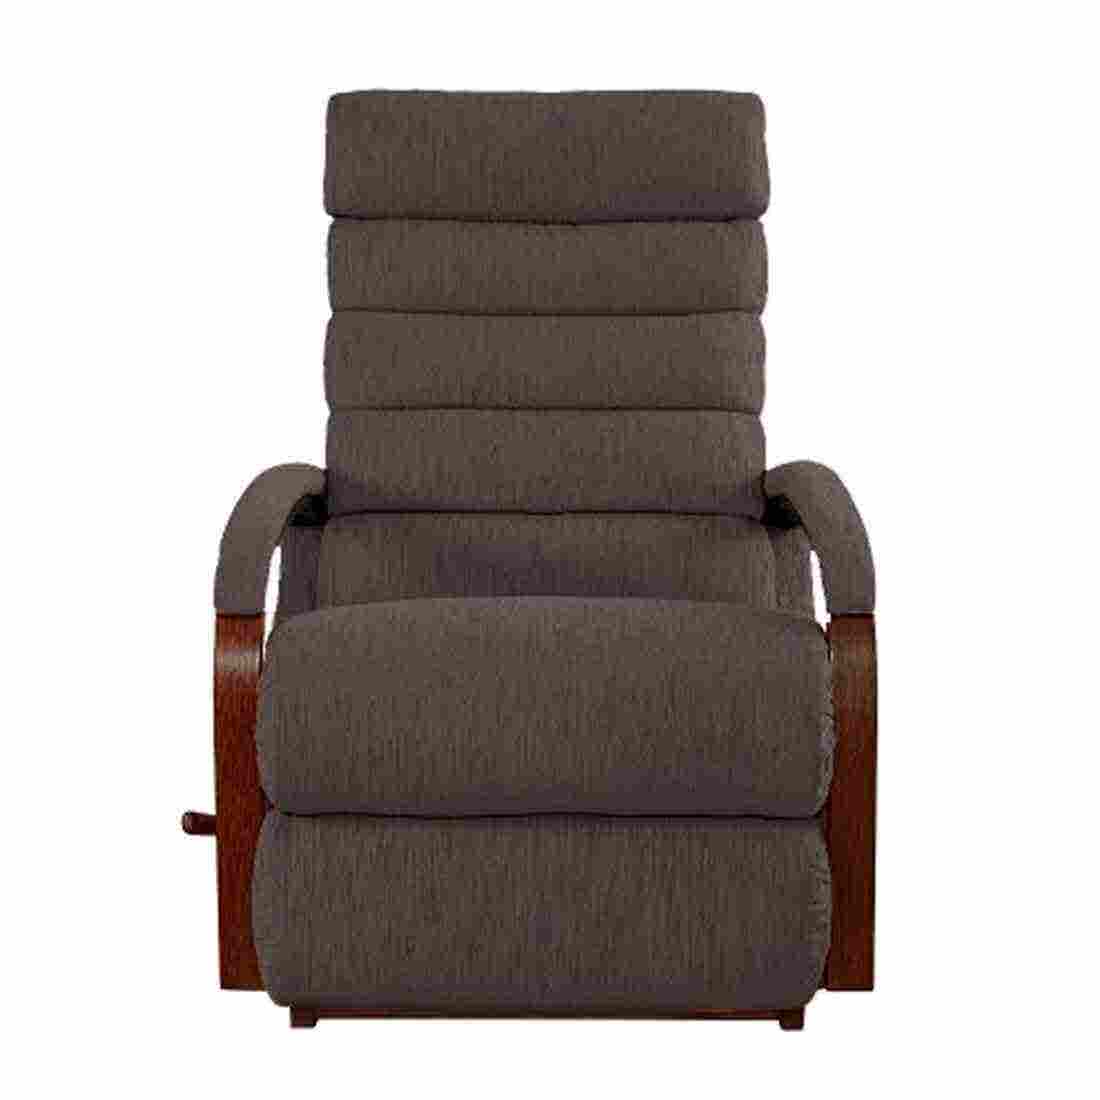 เก้าอี้ปรับเอนนอน La-Z-Boy 10T-520-D-144057 Norman ผ้า i-Clean สี Truffle-01